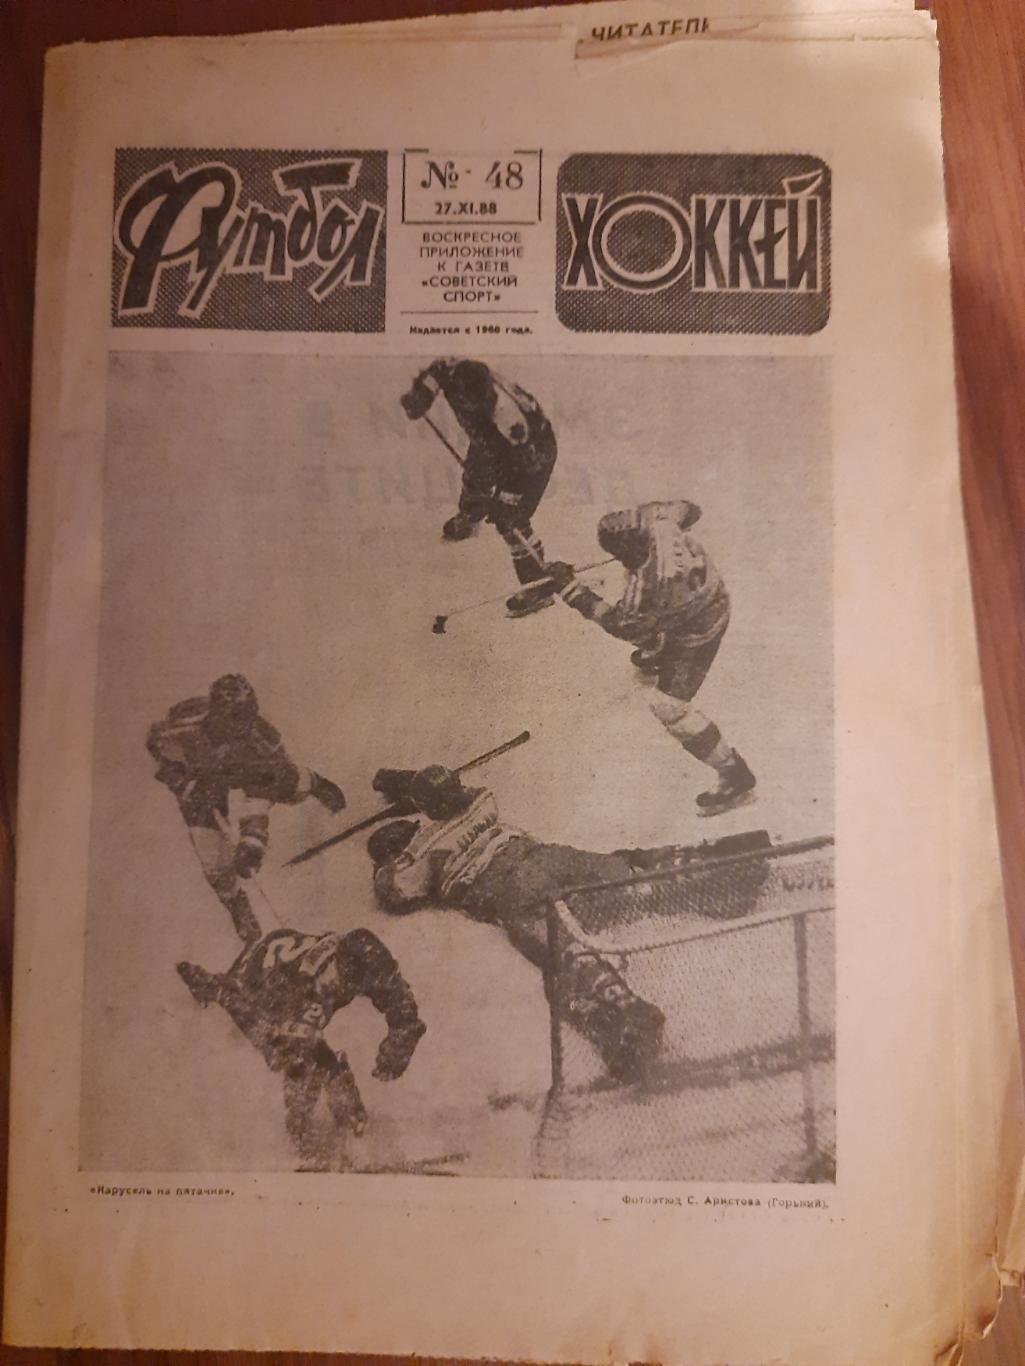 еженедельник футбол-хоккей #48,1988